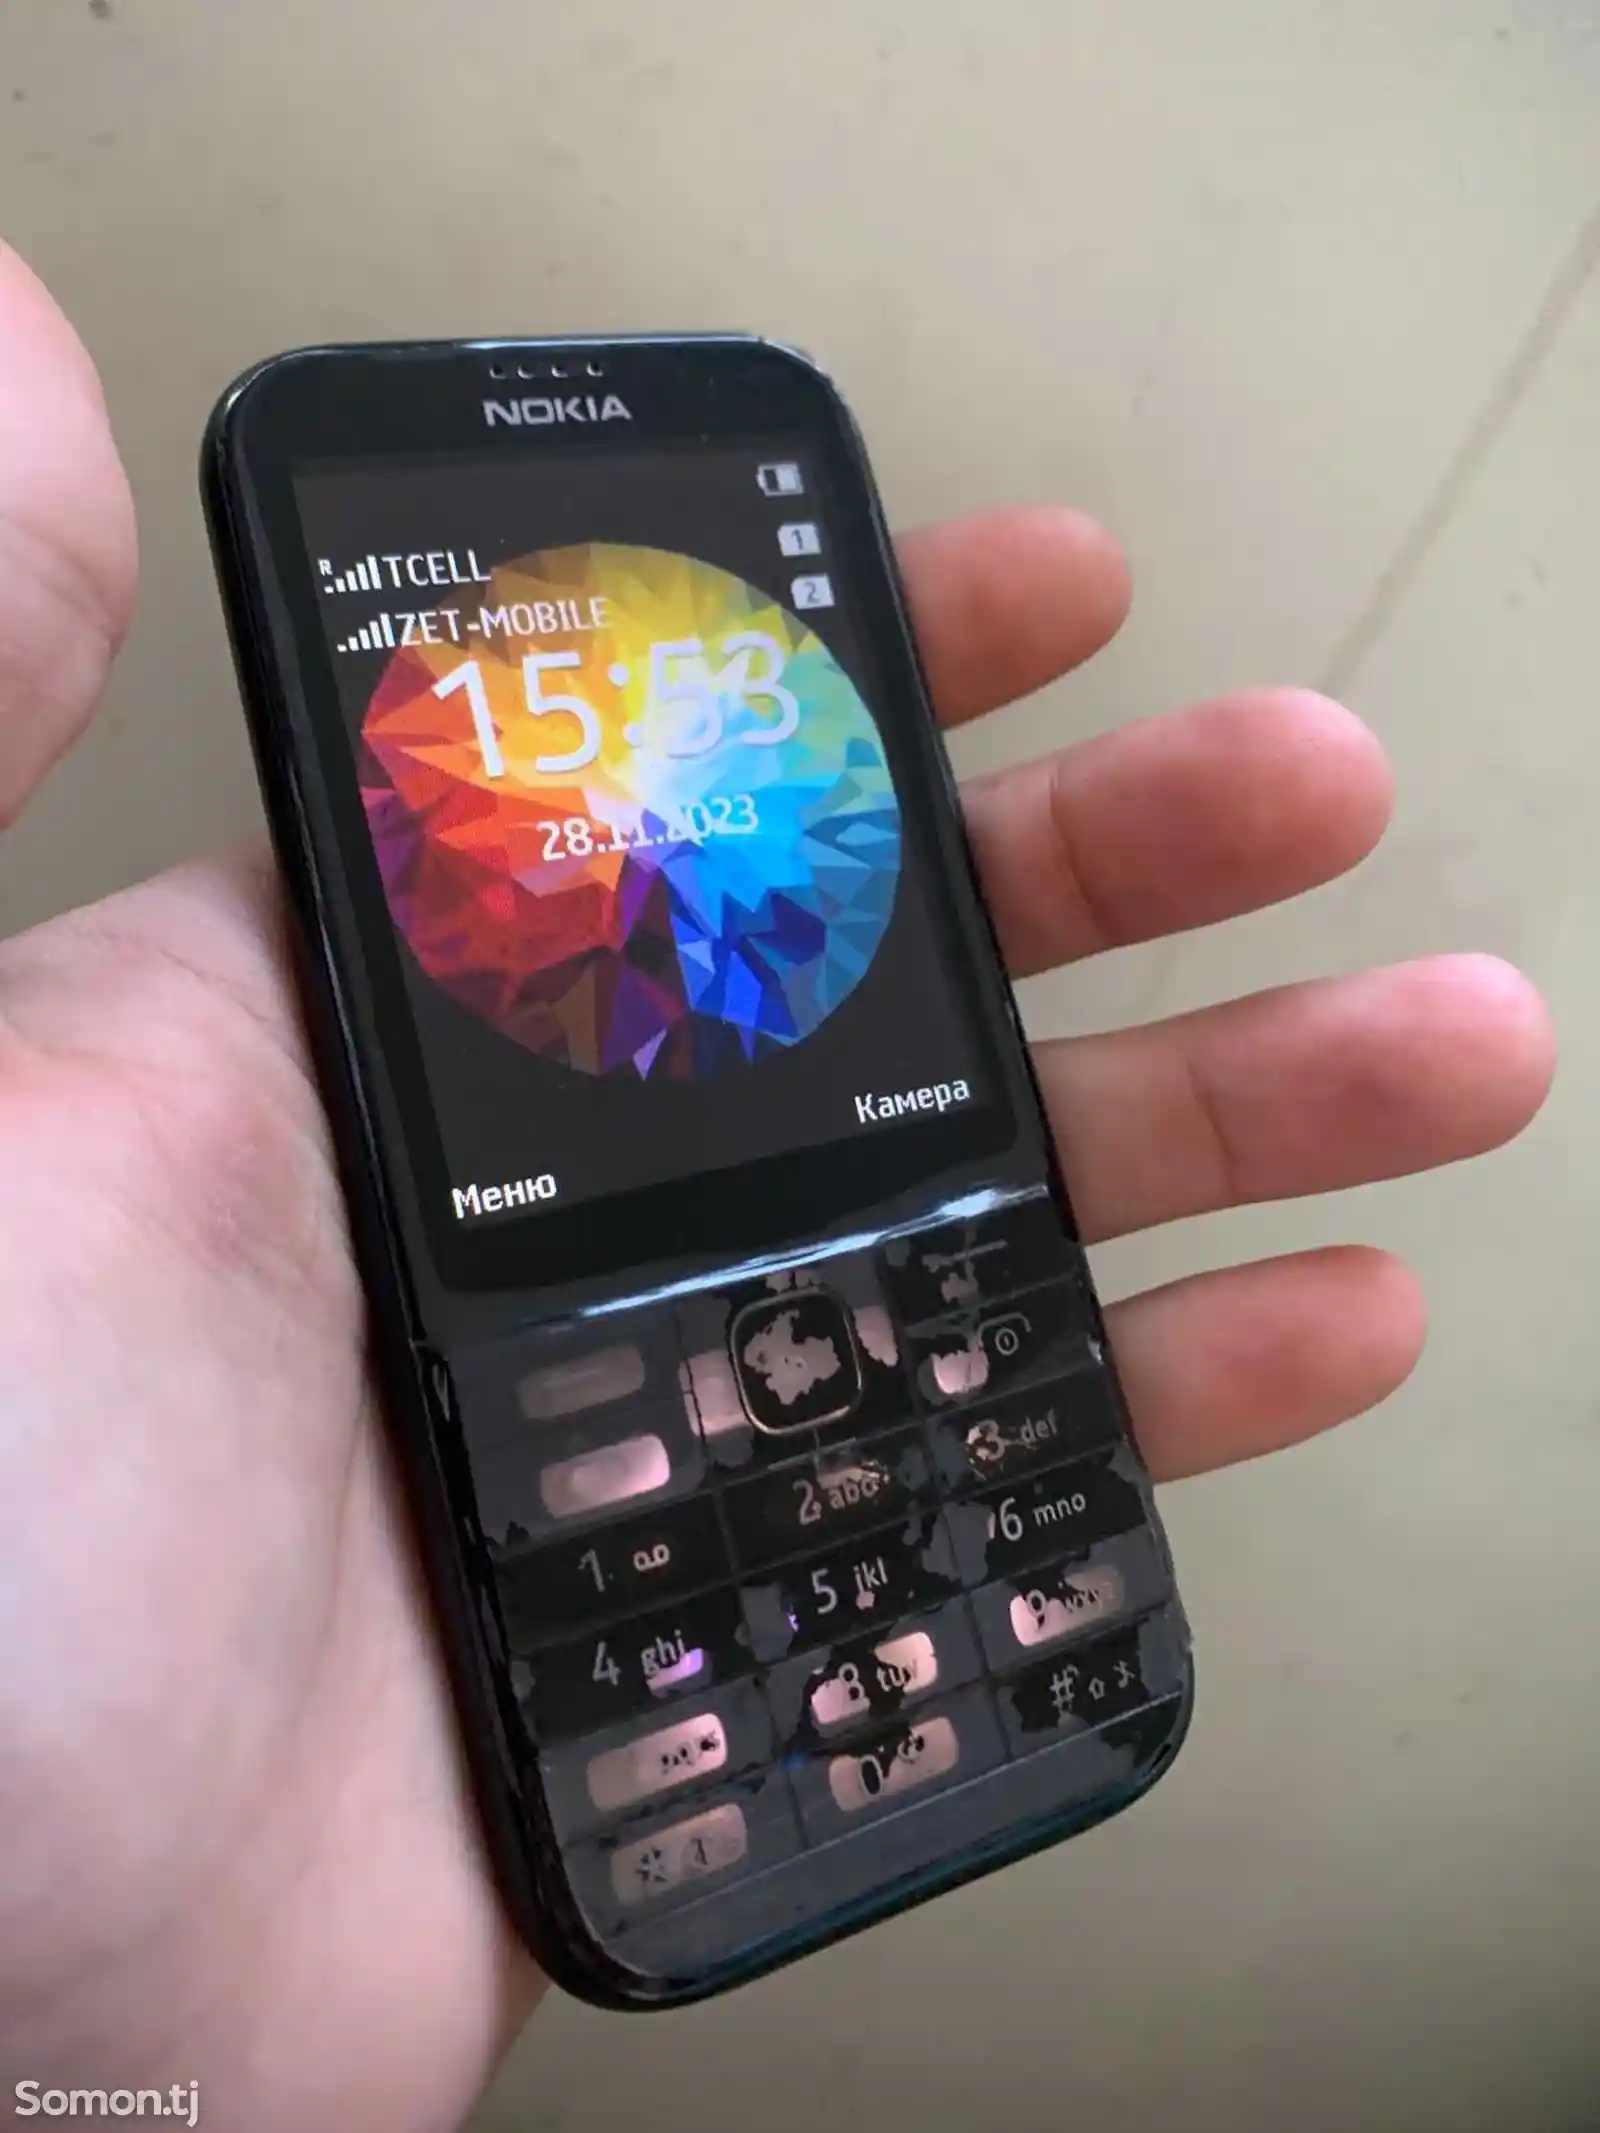 Nokia 301-1